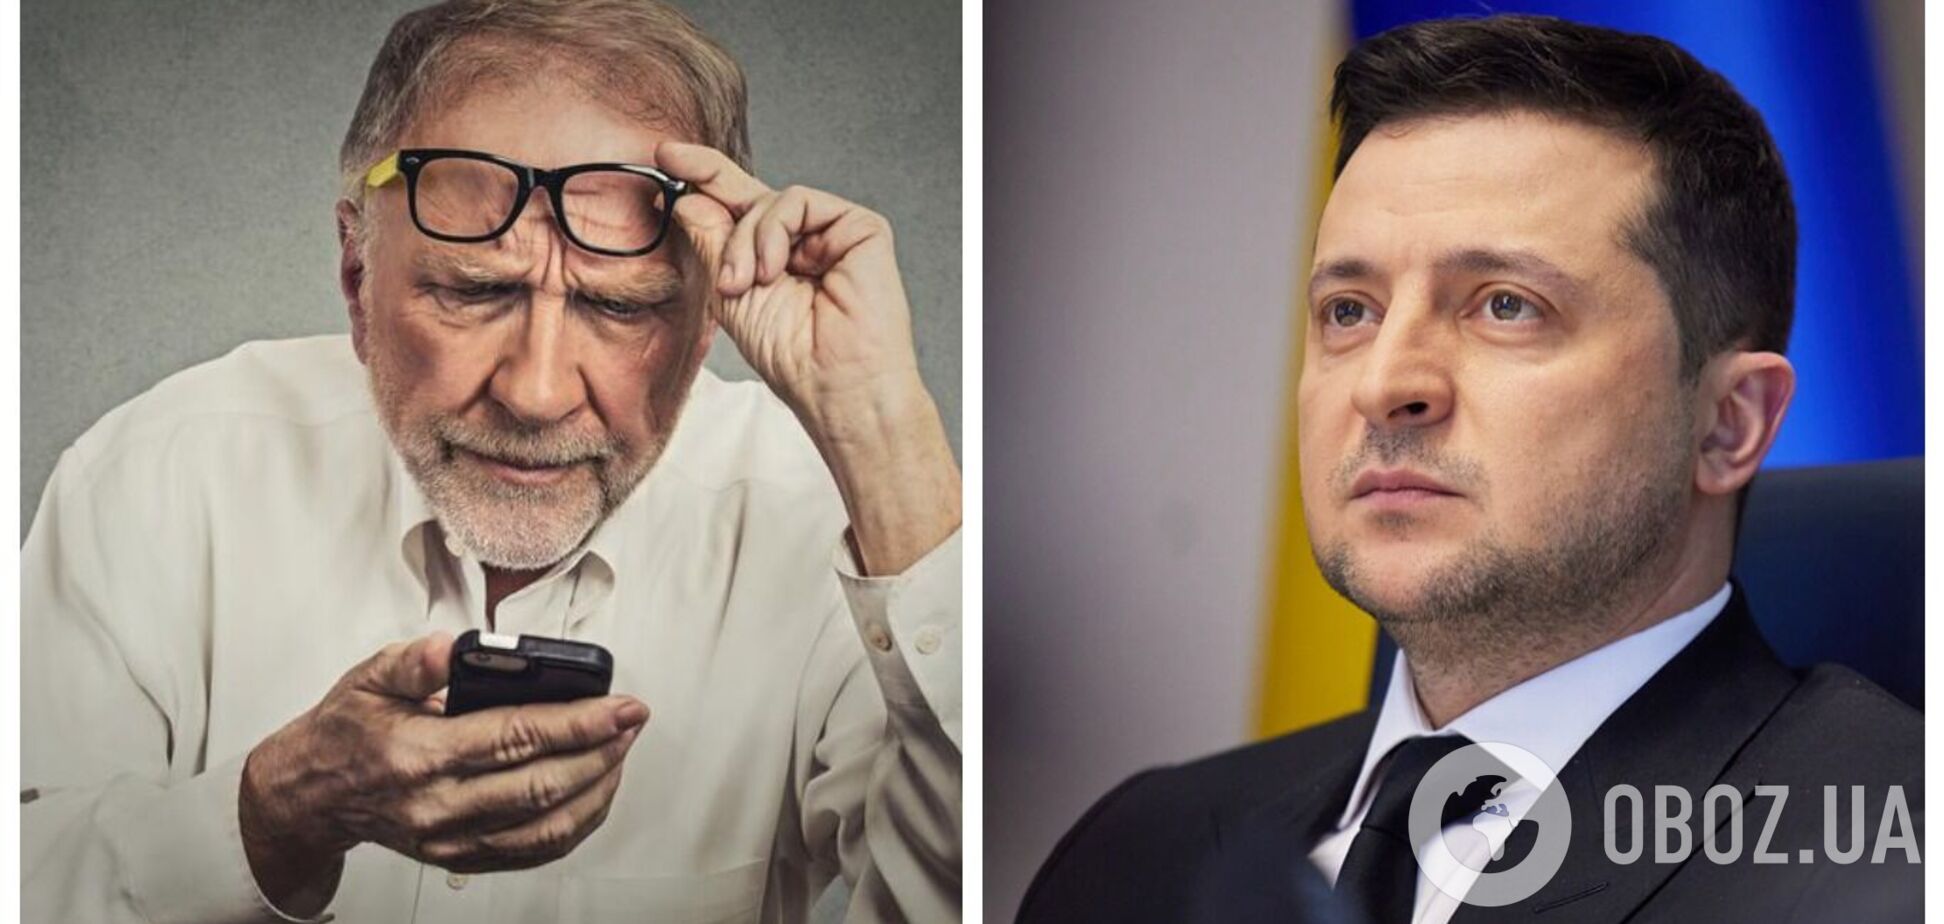 Давайте одразу iPhone: українці бурхливо відреагували на заяву Зеленського про смартфони для пенсіонерів